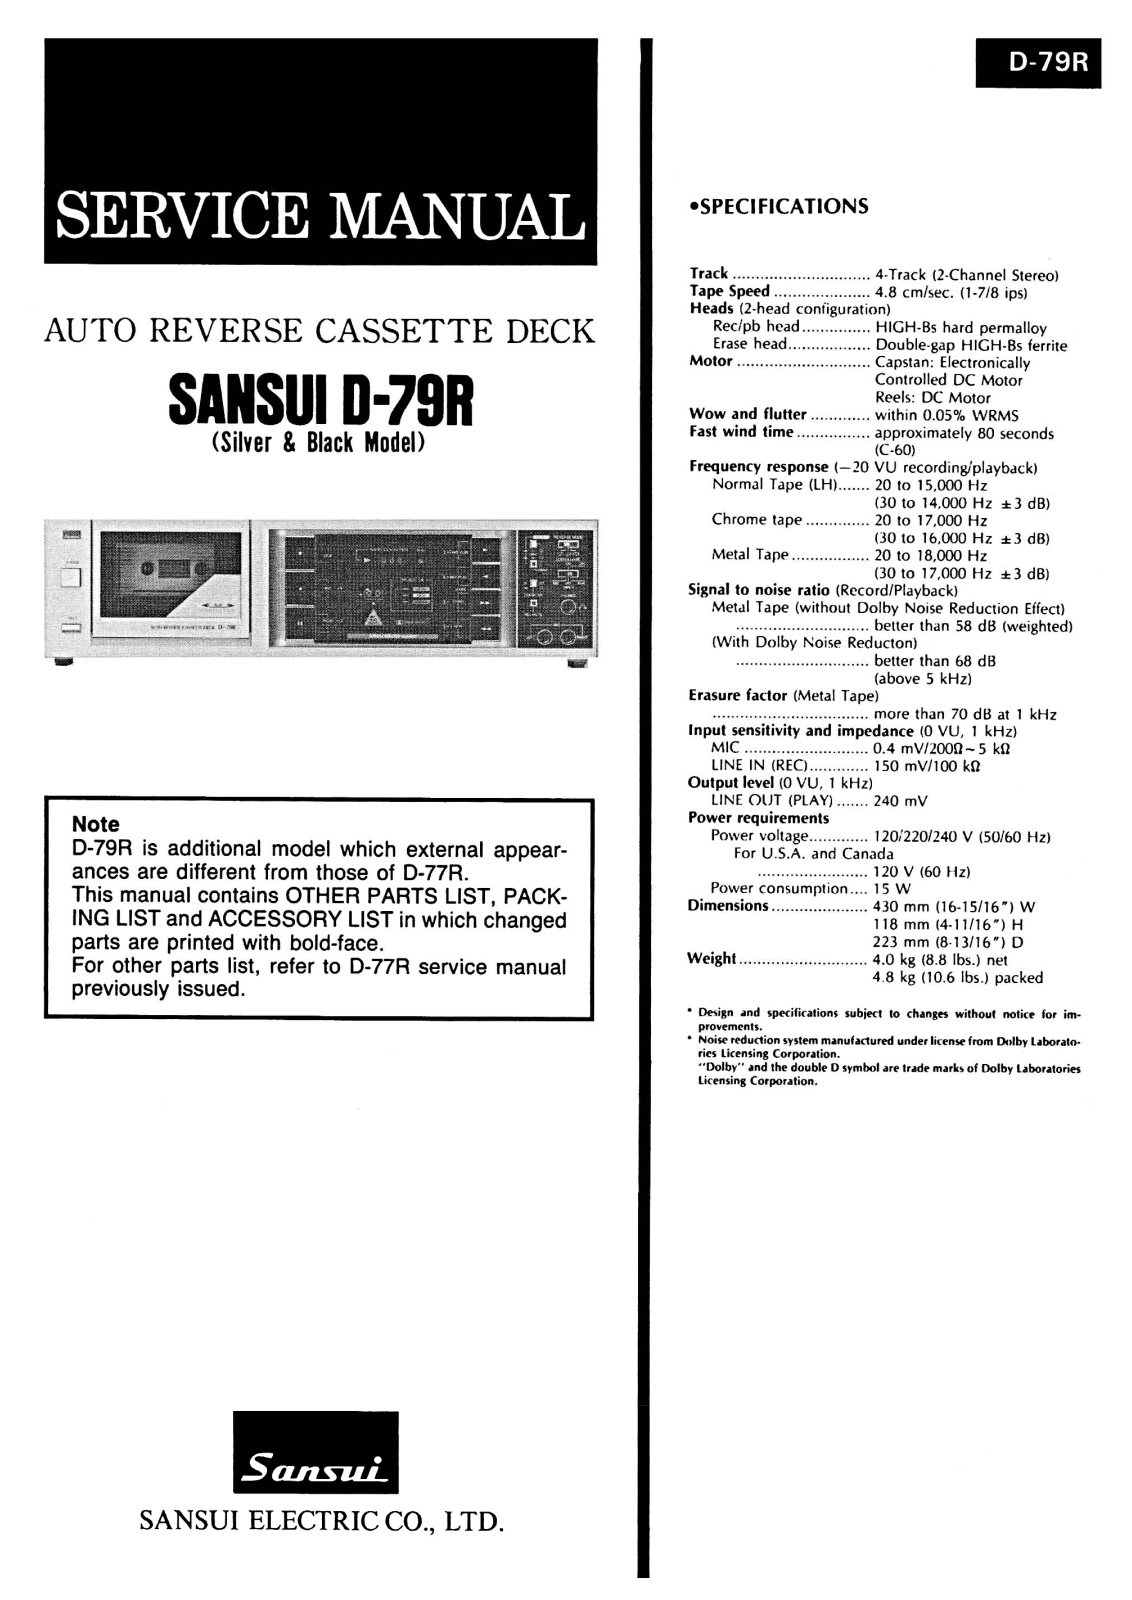 Sansui D-79-R Service Manual